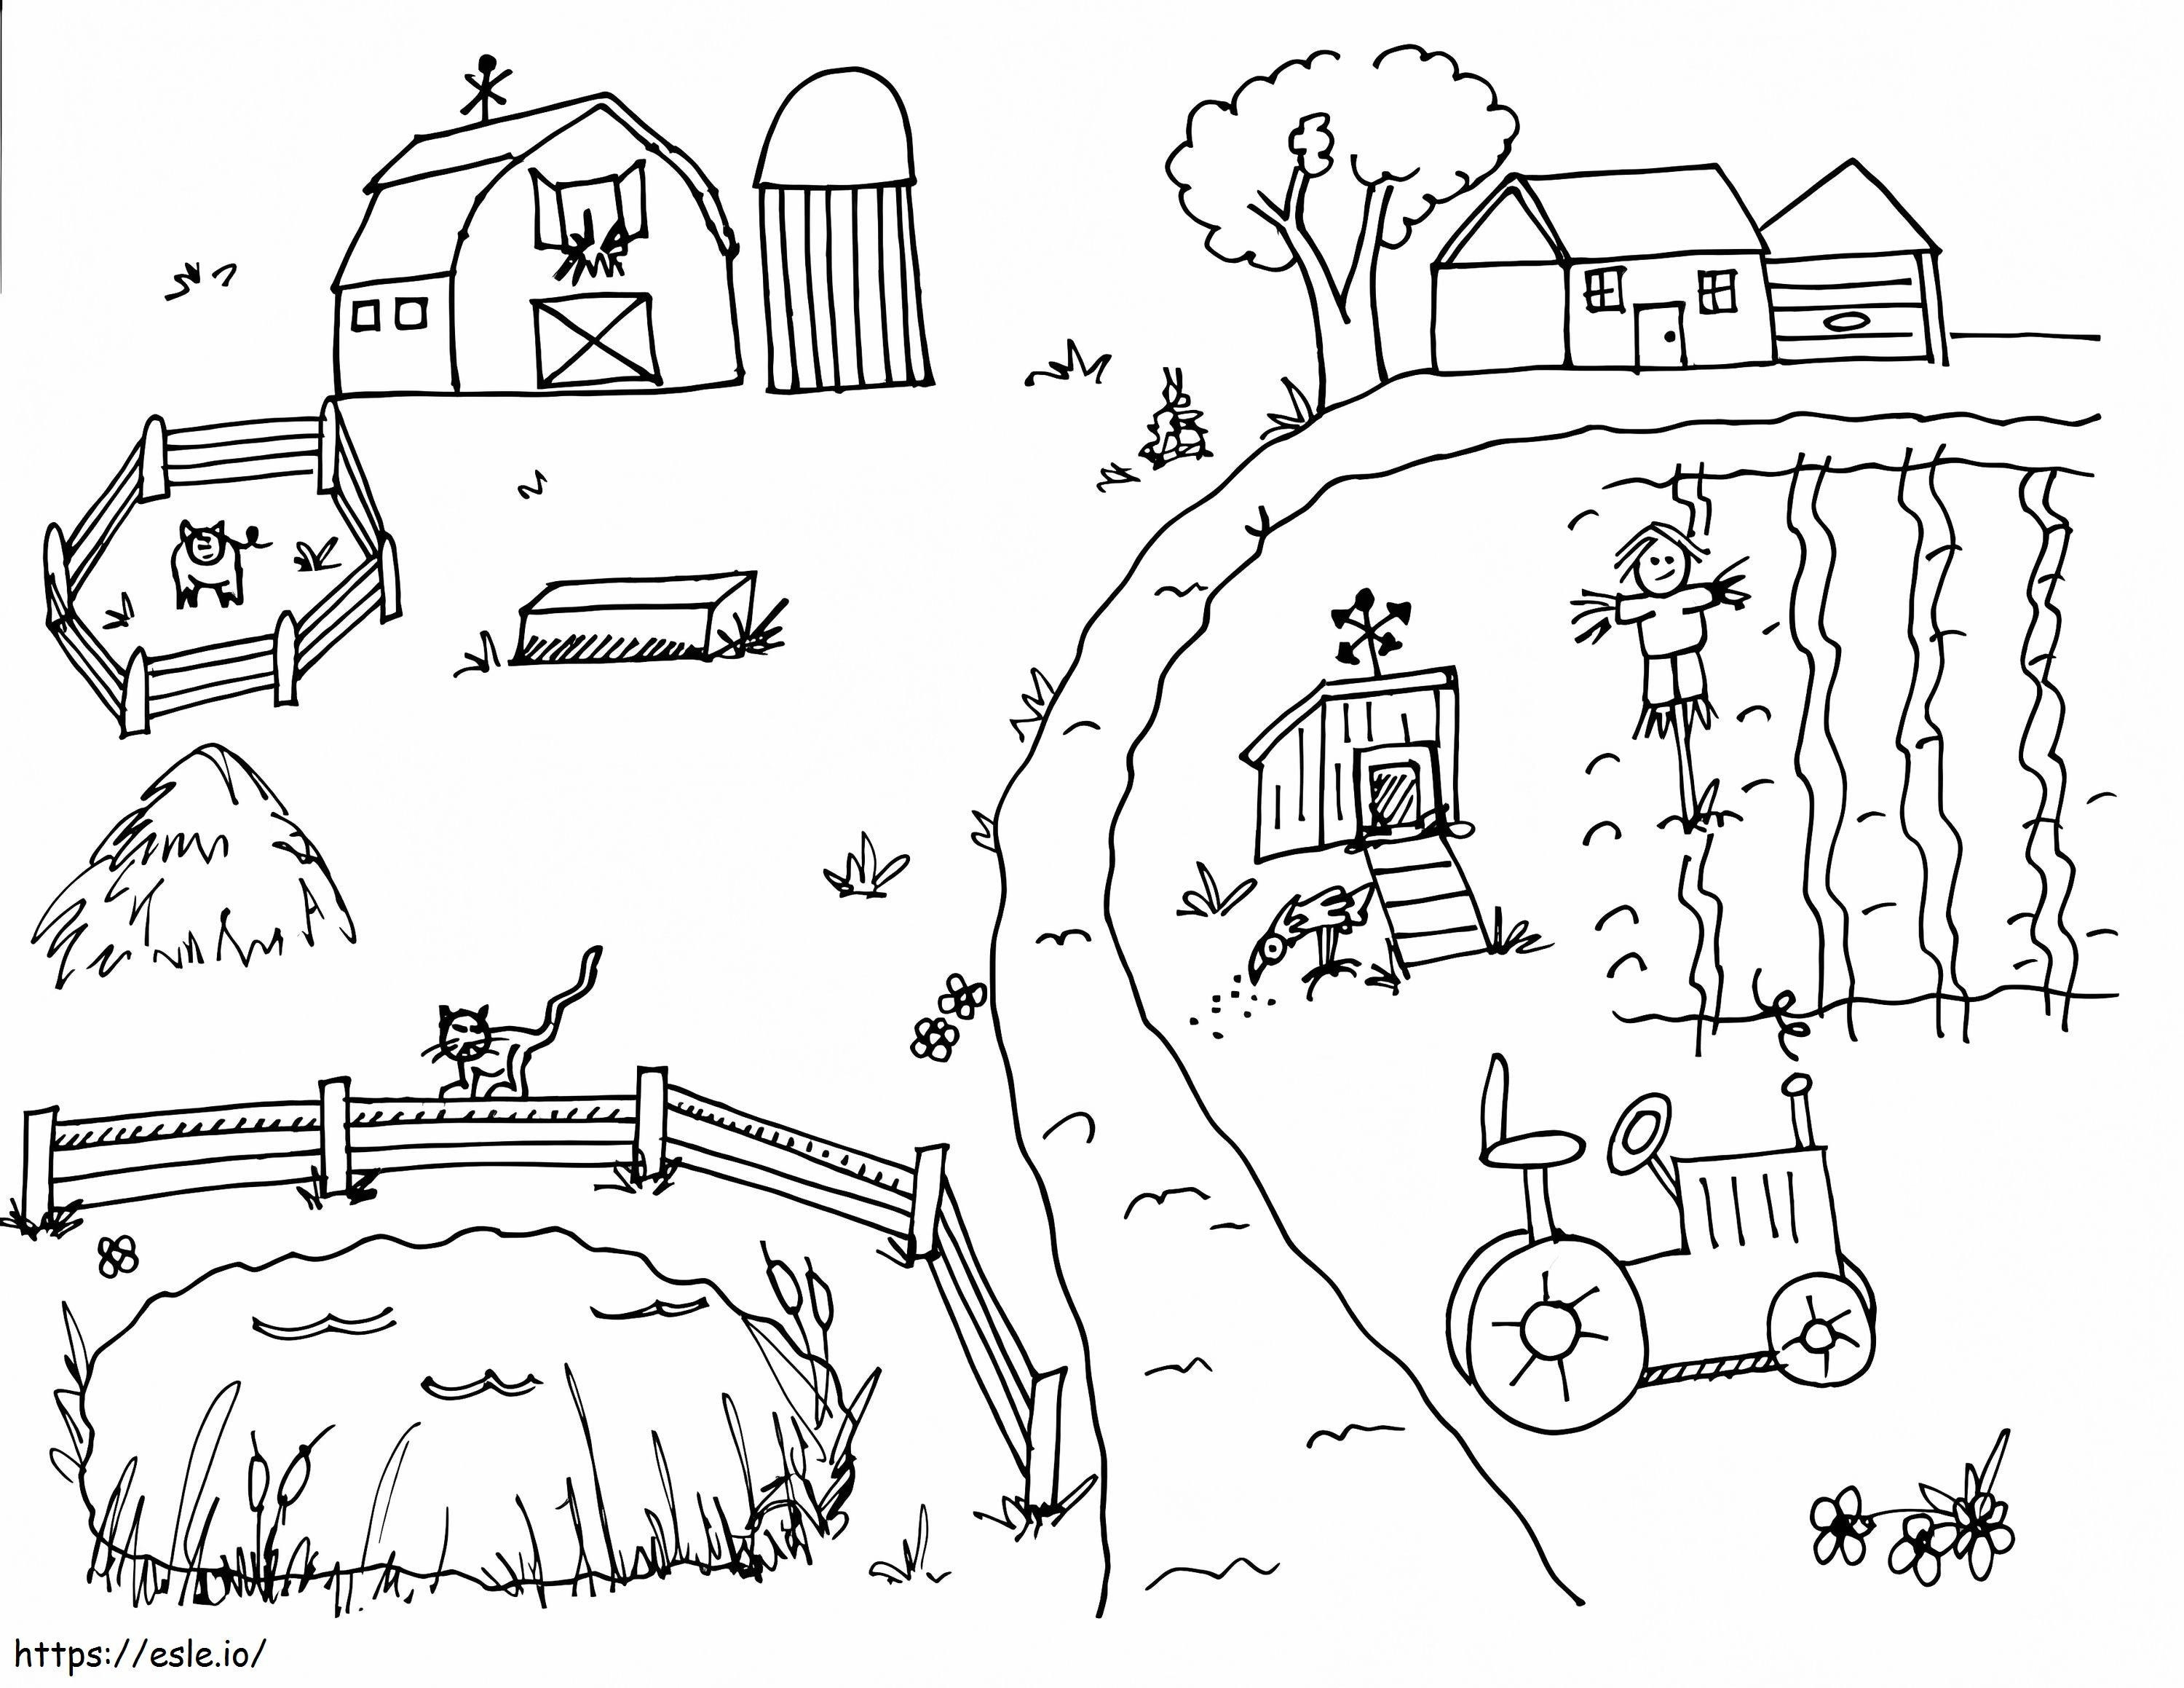 Bauernhof 1 ausmalbilder